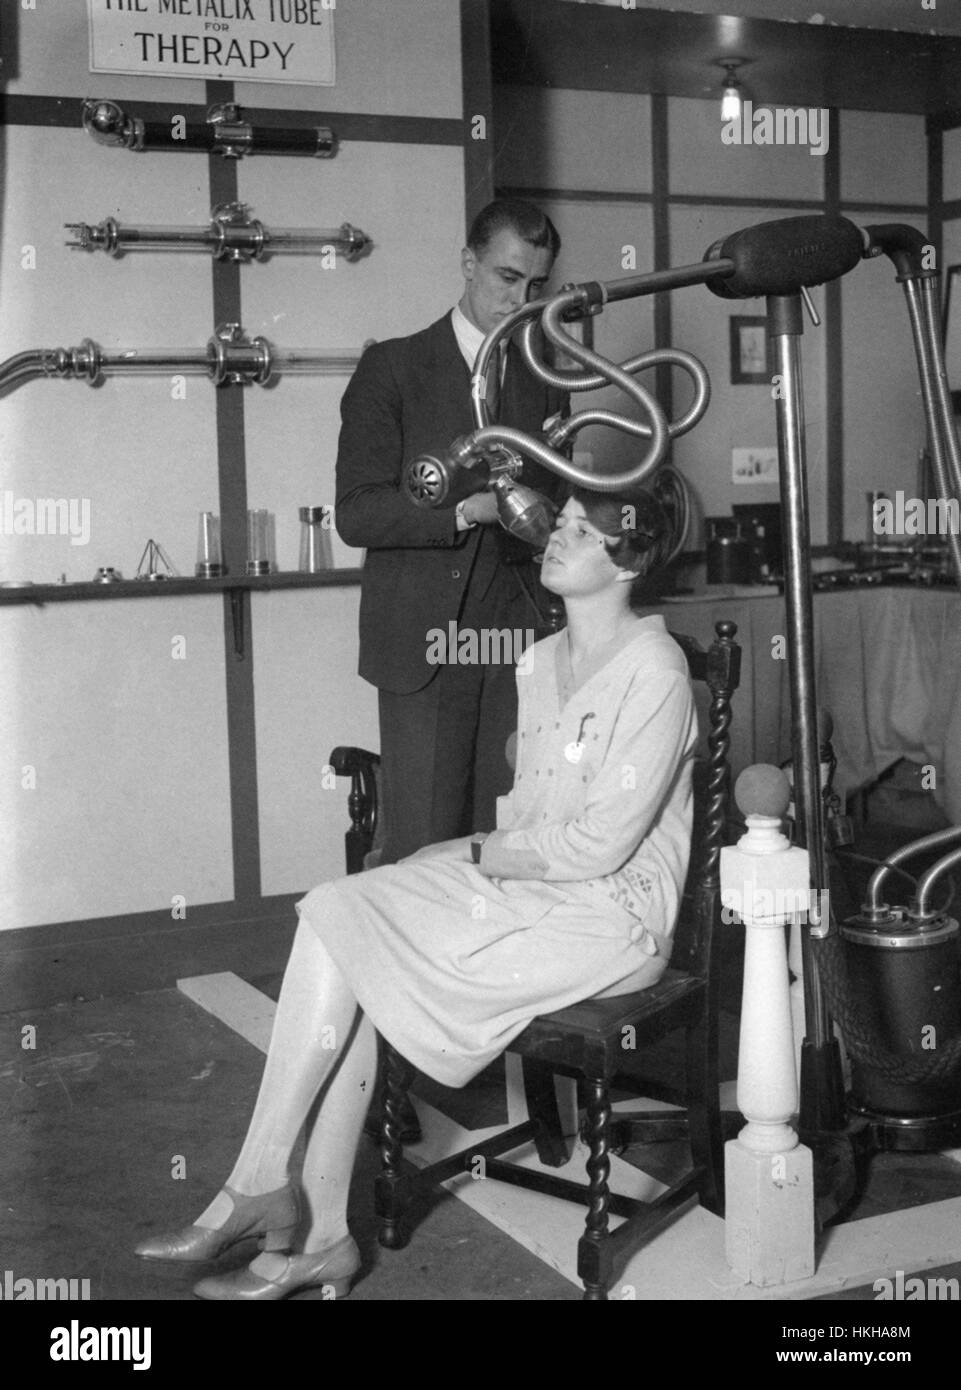 Attività di METALIX tubo per la terapia di un tipo di macchina a raggi x realizzato da Philips/Muller azienda in mostra al salone di Londra nel novembre 1928 Foto Stock